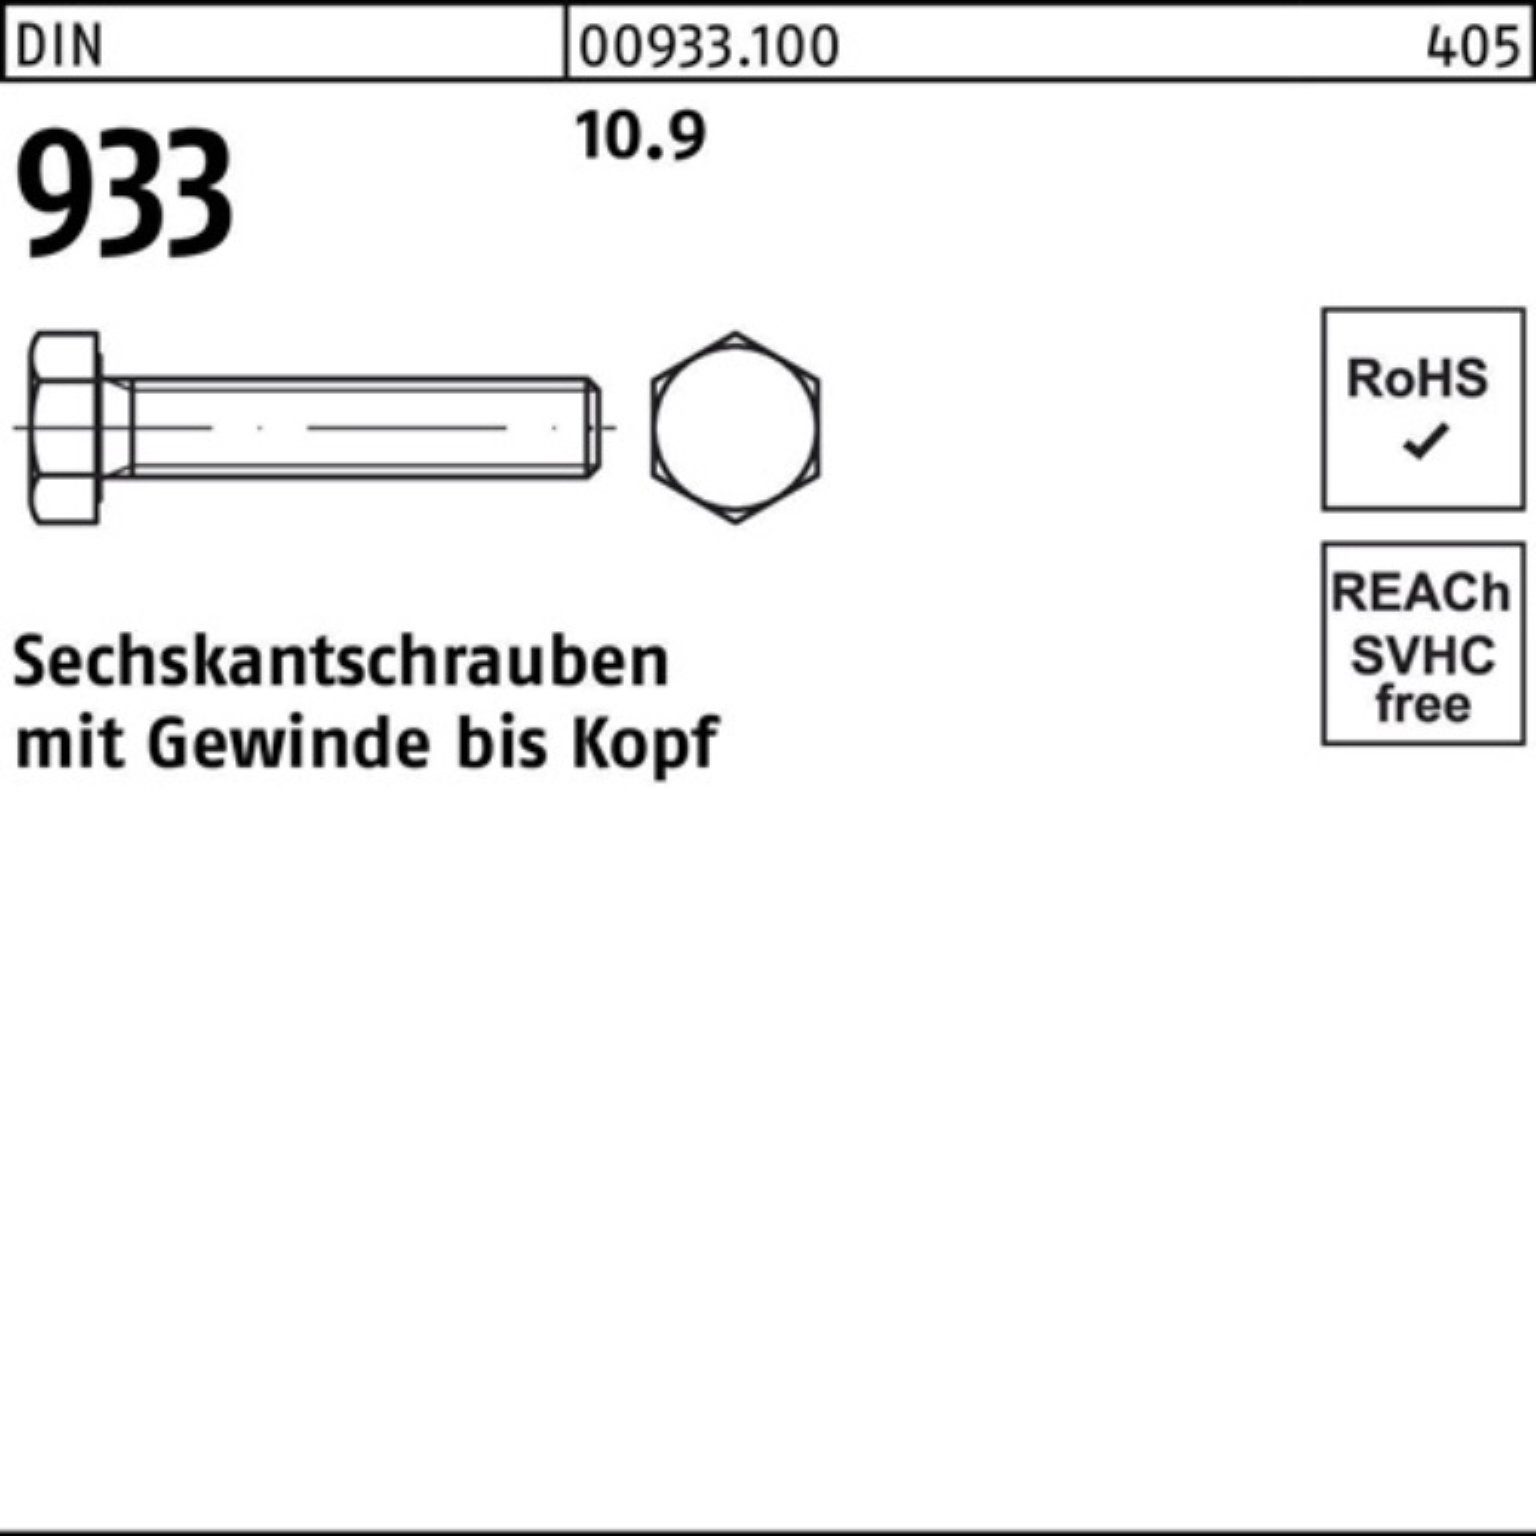 Reyher Sechskantschraube 100er Pack 1 50 DIN DIN VG 10.9 M36x Sechskantschraube Stück 933 933